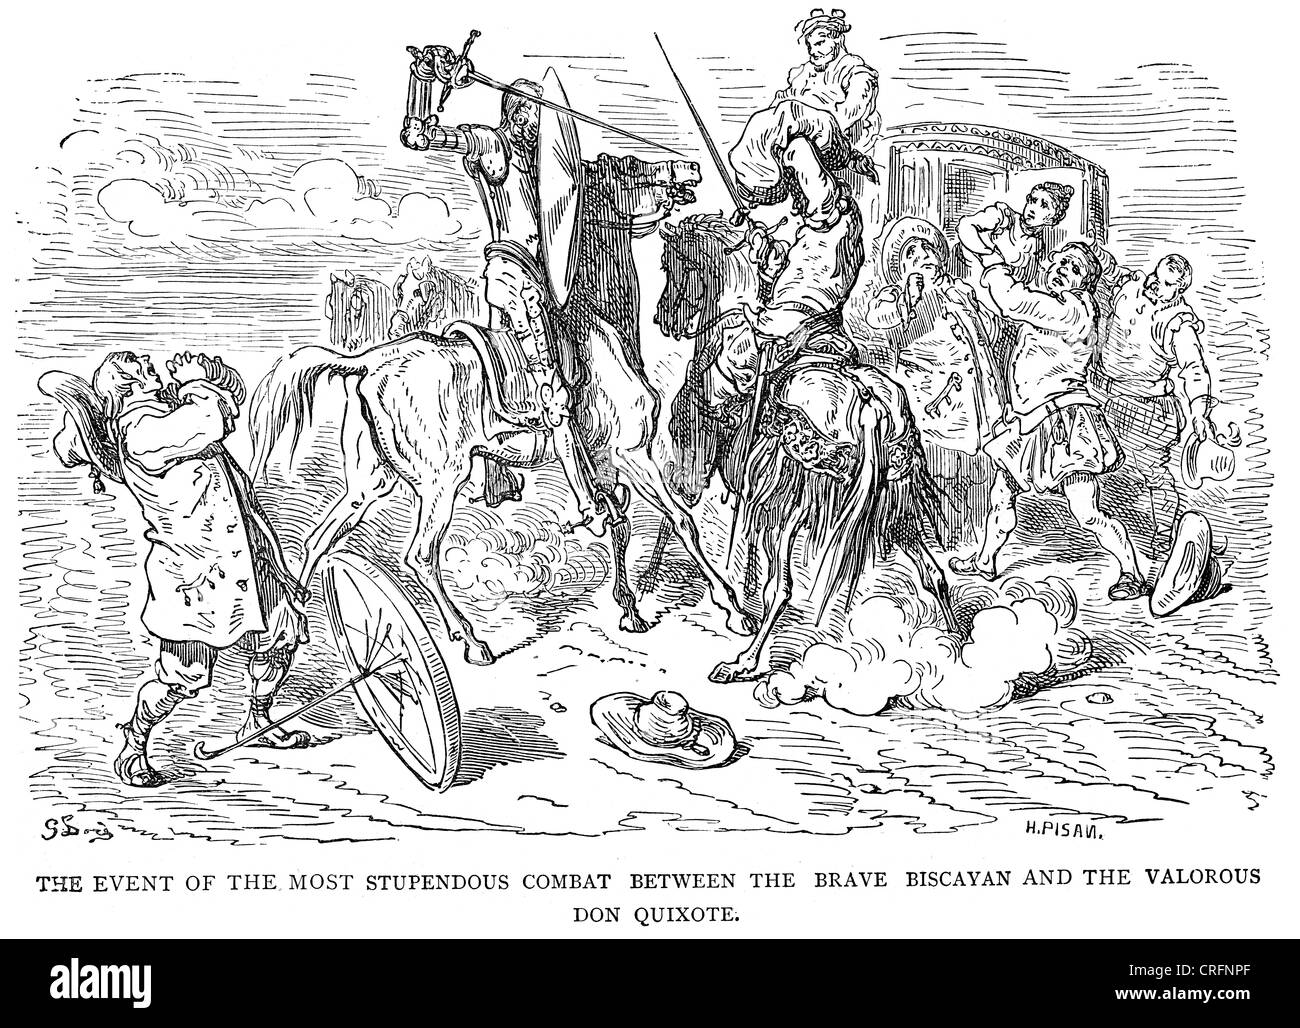 Don Quijote kämpft tapfer Biskaya. Illustration von Gustave Dore von Don Quijote. Stockfoto